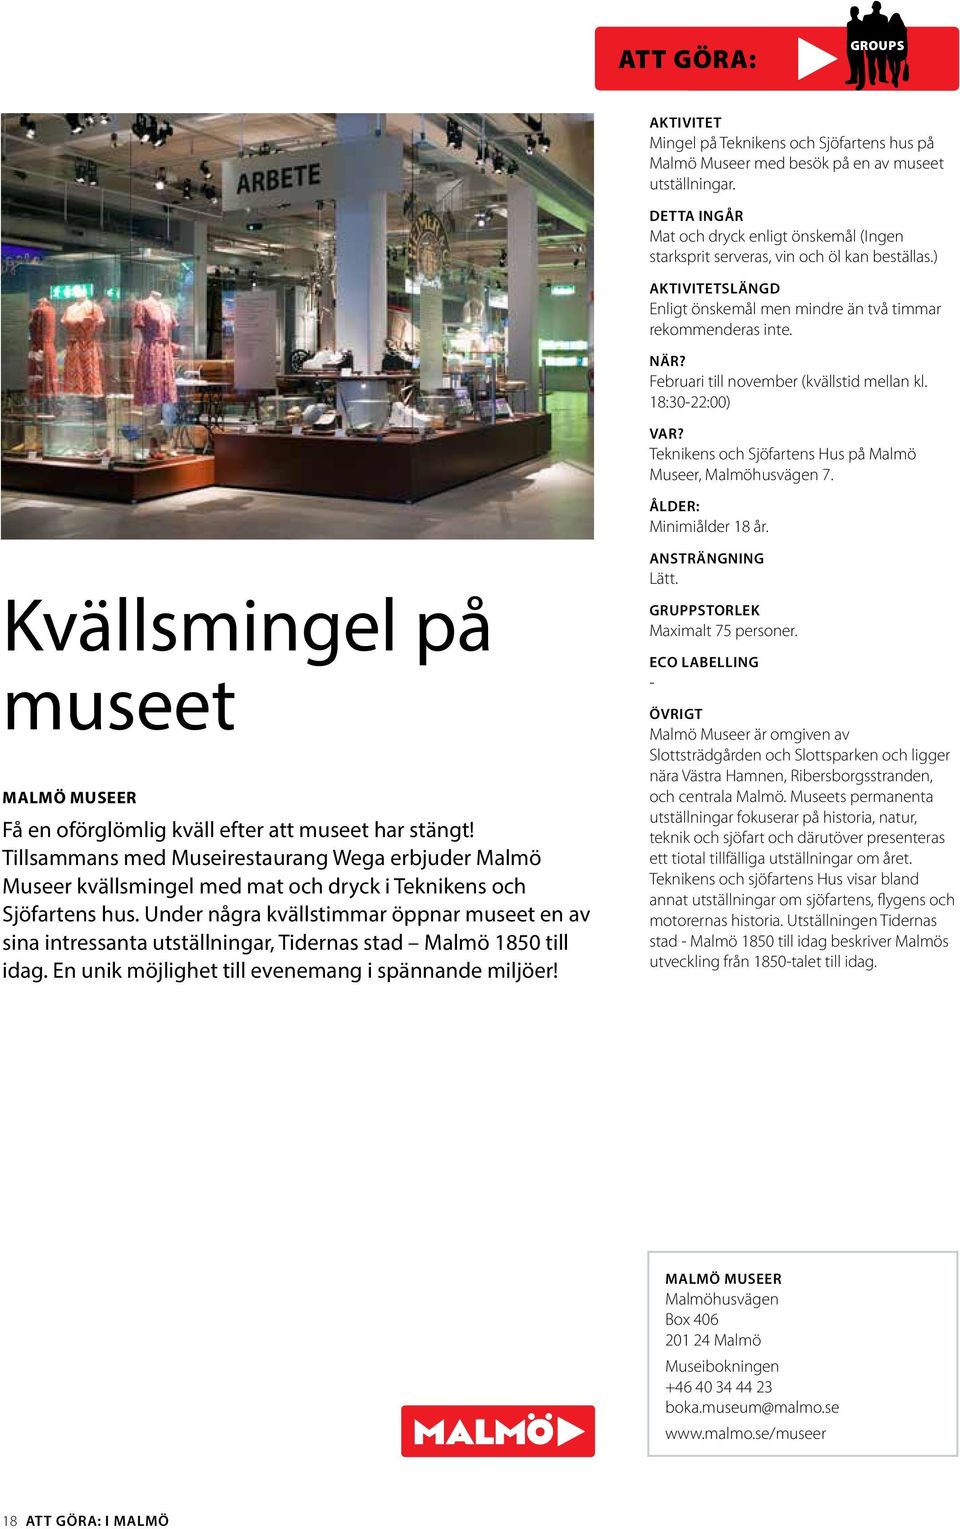 ÅLDER: Minimiålder 18 år. Kvällsmingel på museet MALMÖ MUSEER Få en oförglömlig kväll efter att museet har stängt!